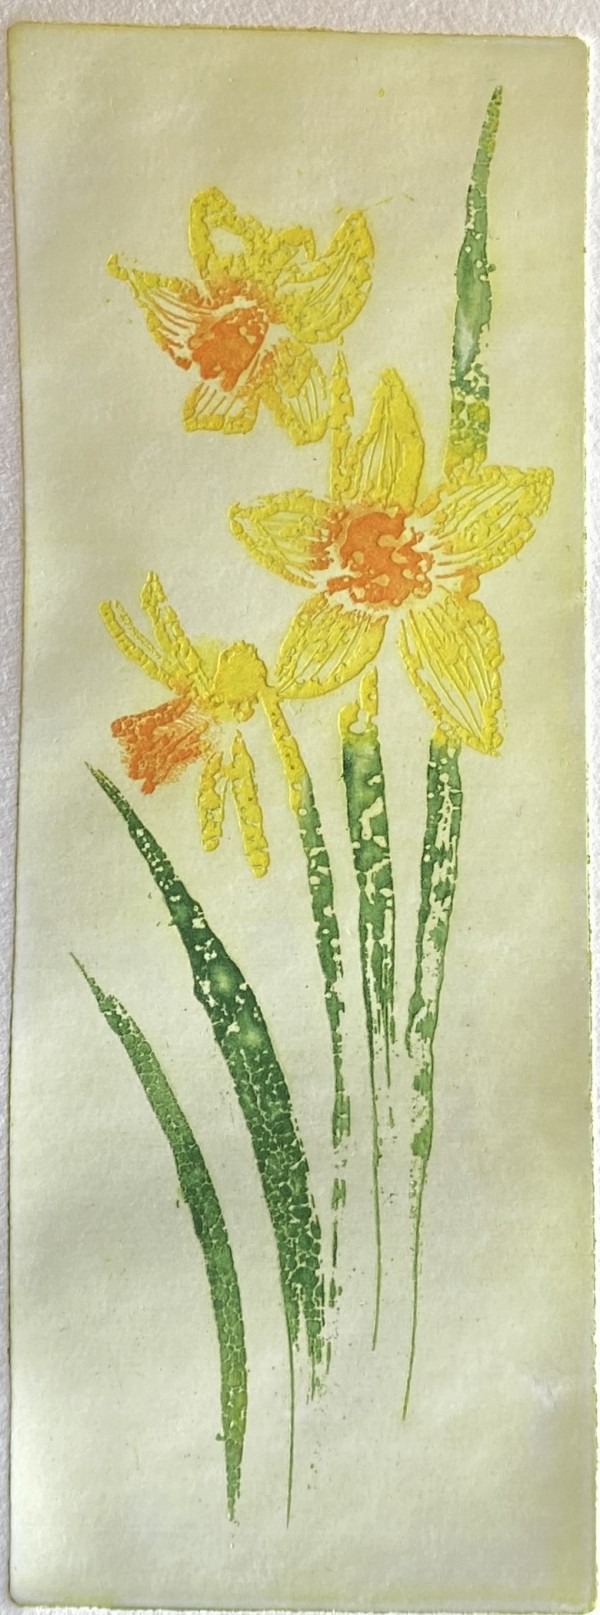 Daffodils by Philine van der Vegte